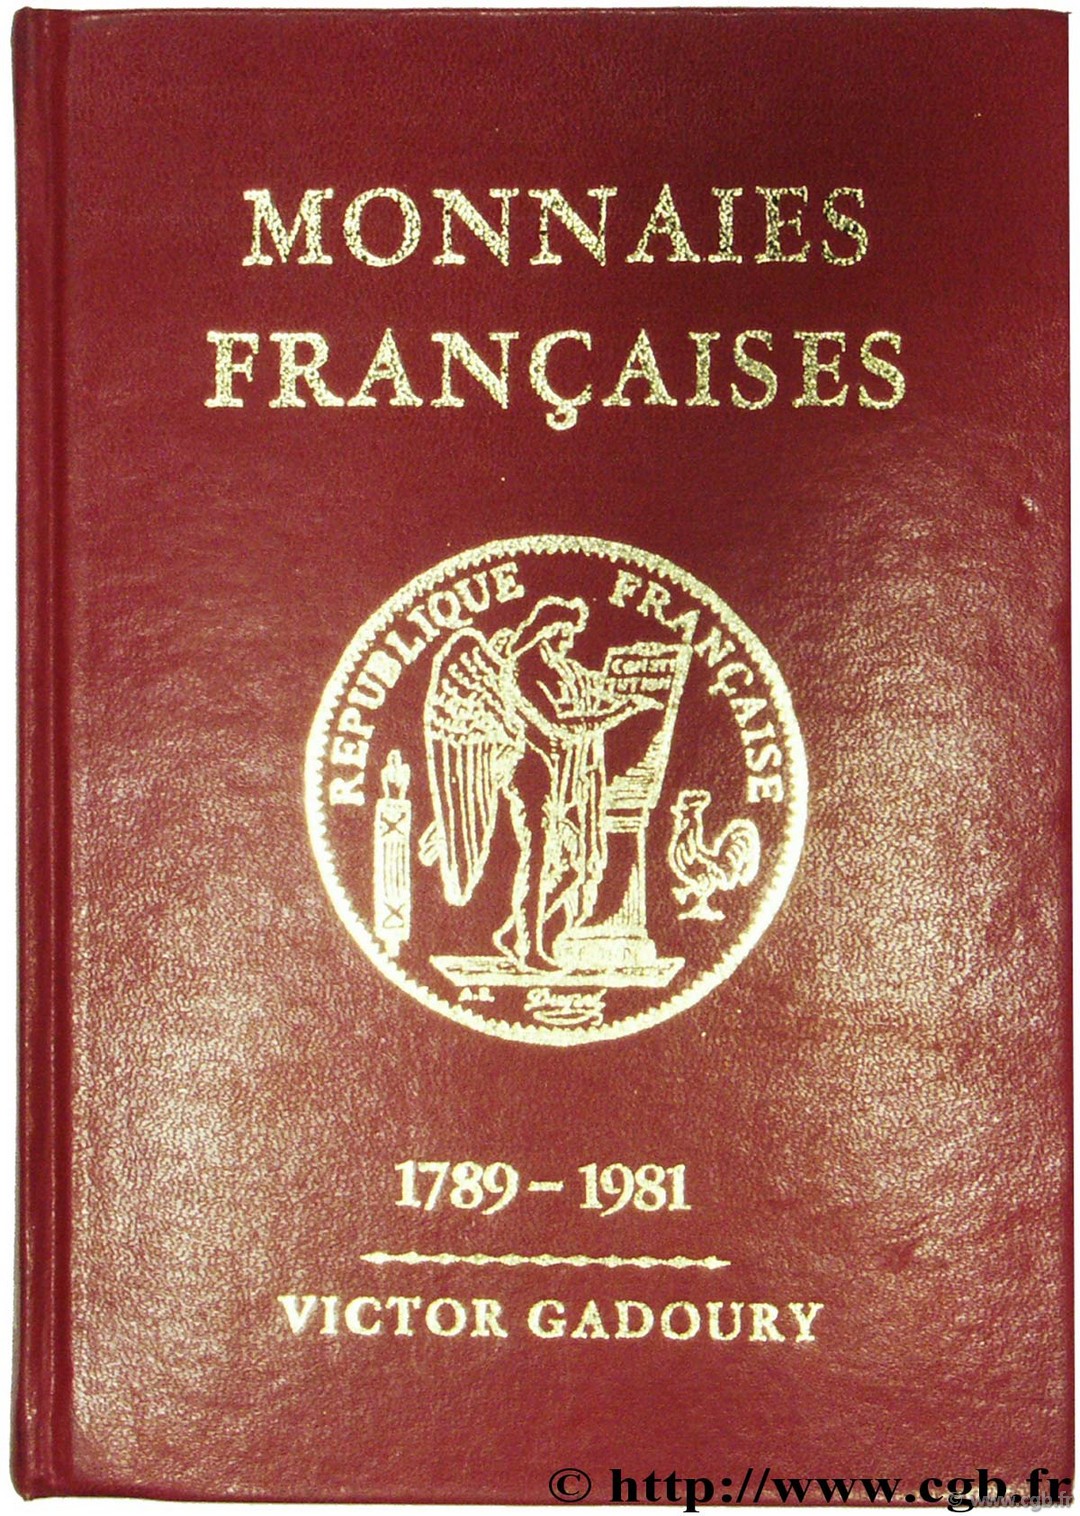 Monnaies françaises - 1789 - 1981 GADOURY V.